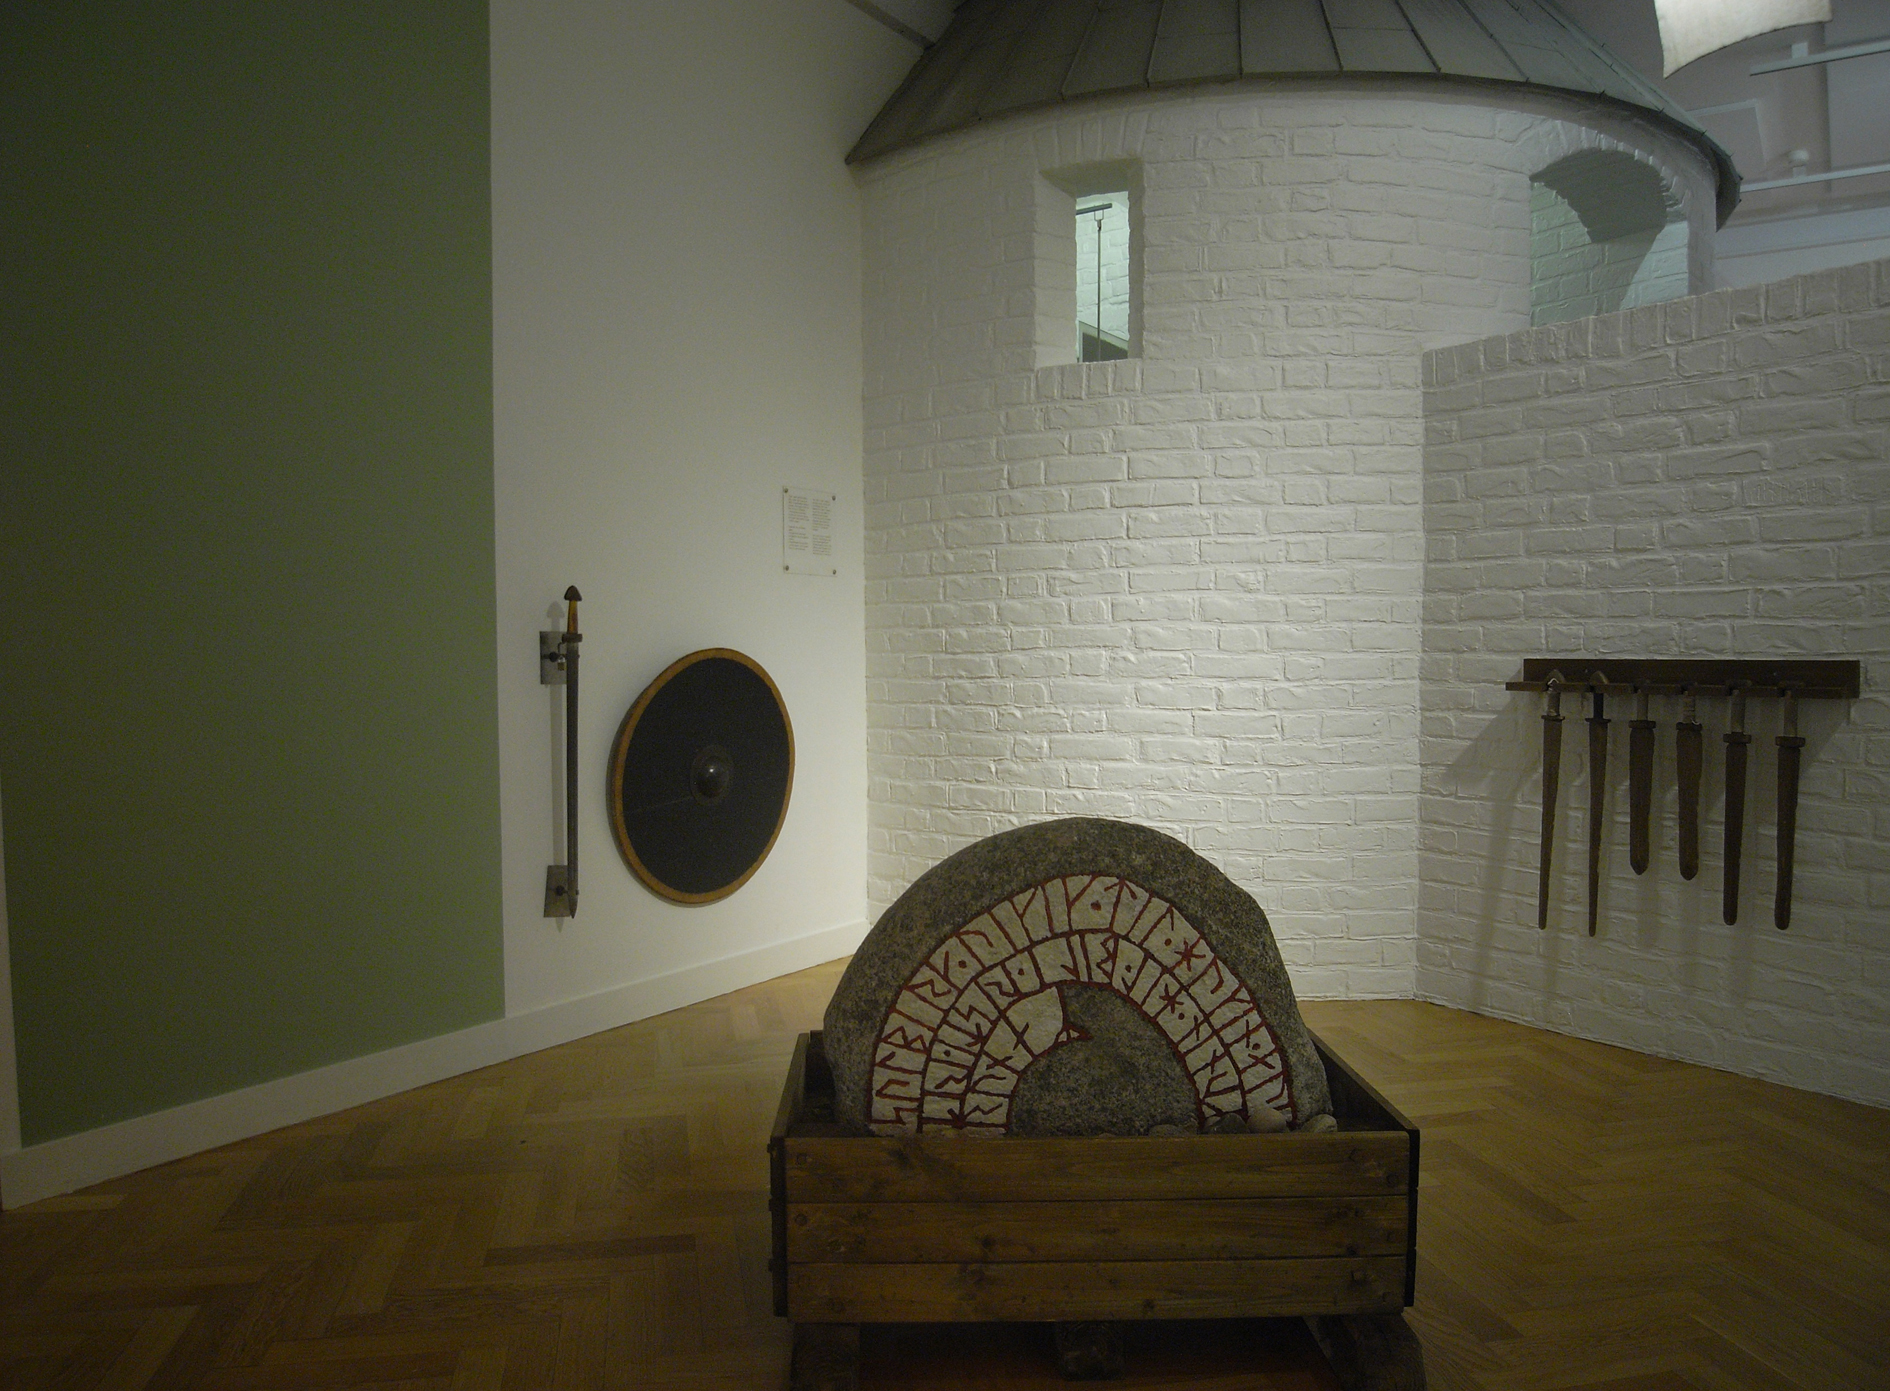 Vikingetiden mødes med Middelalderen i et rum hvor der er  plads til at slås med træsværd. Børnenes Museum 2010